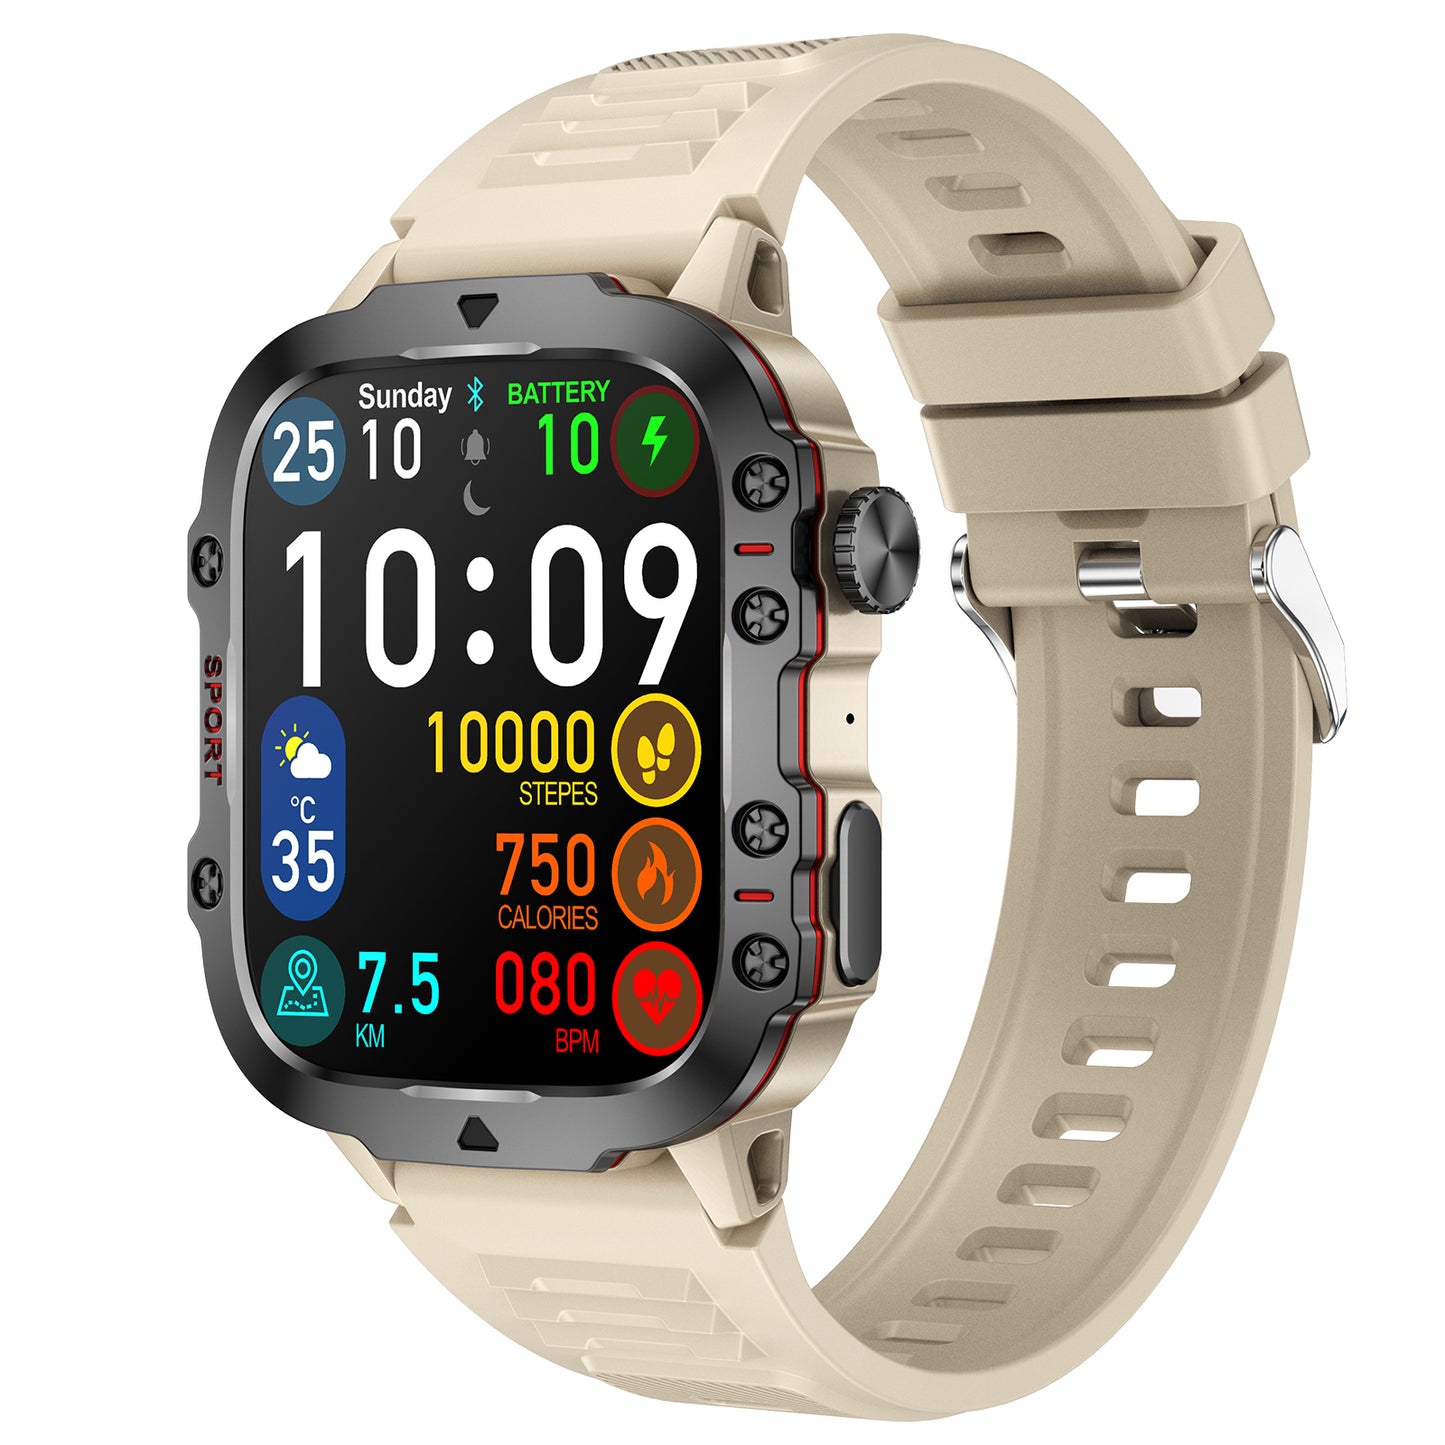 Lifebee QX11 Adventure Smart Watch